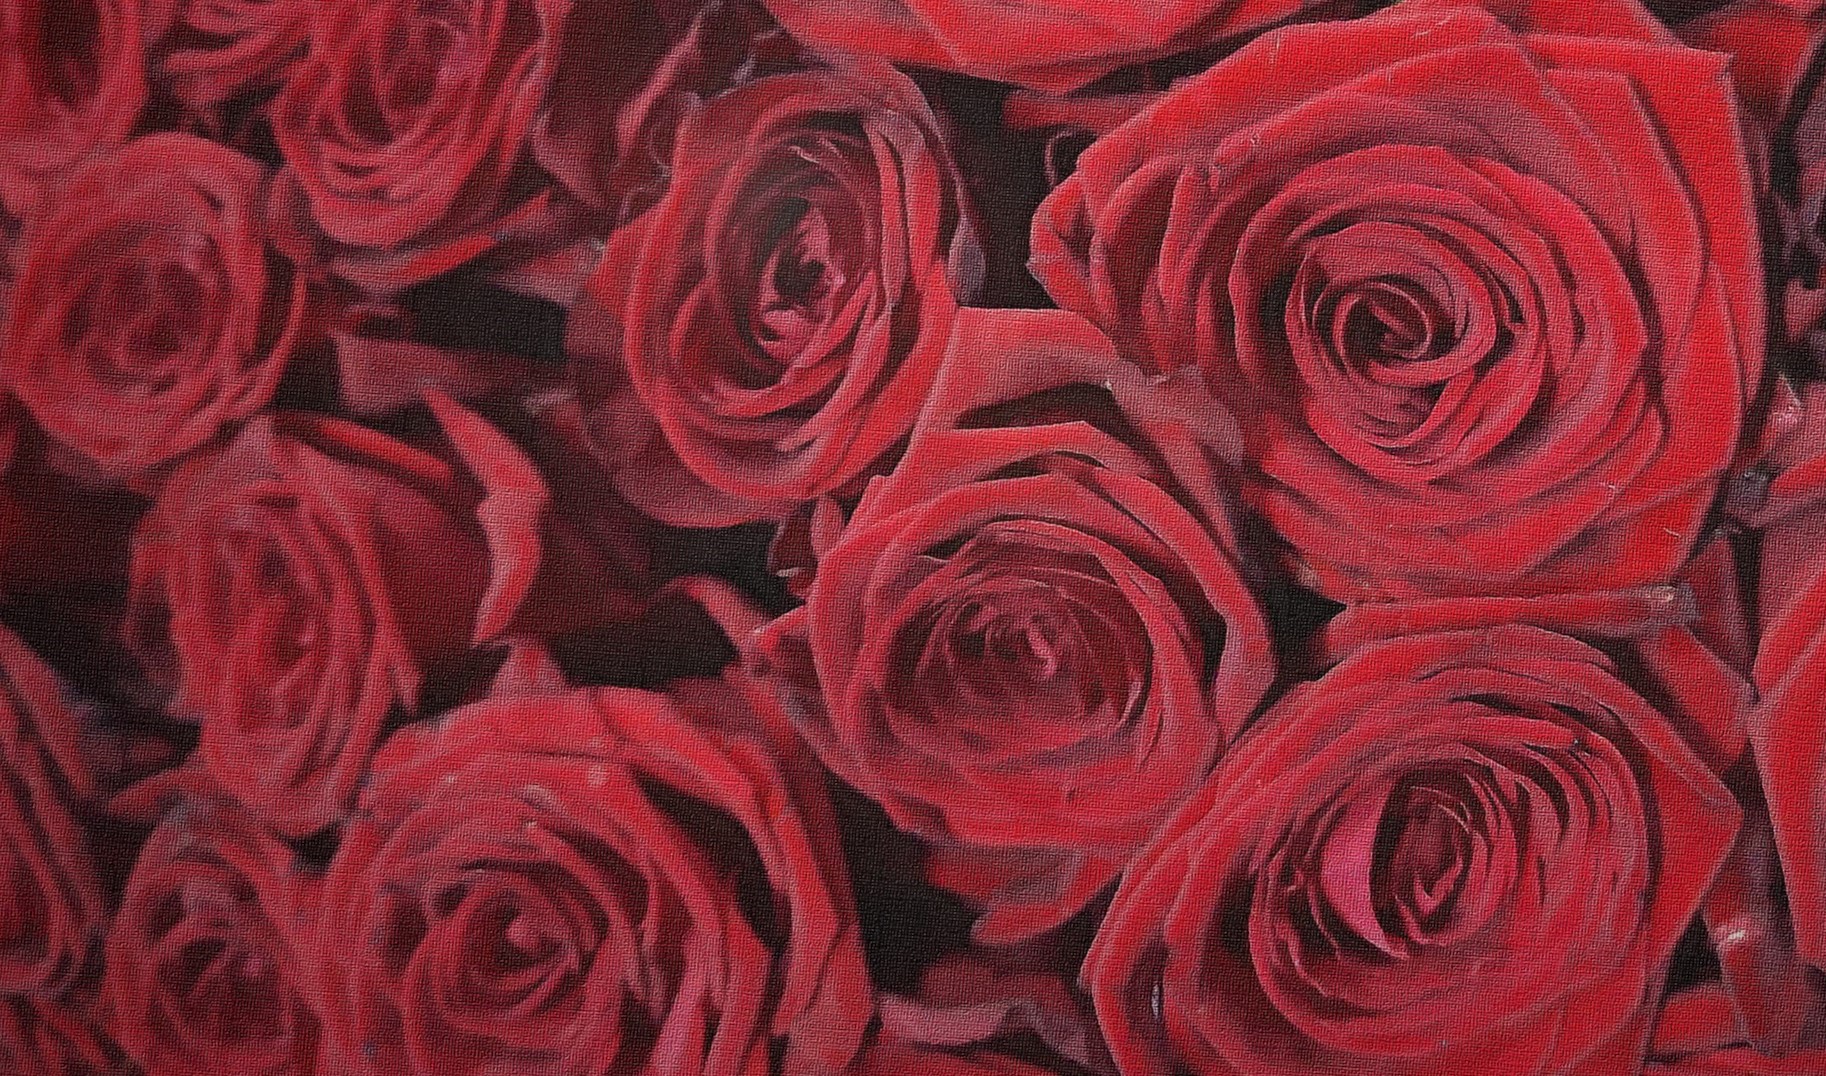 Страстная роза Ред Наоми (Red Naomi). Идеальная красная роза Ред Наоми с бархатистым оттенком